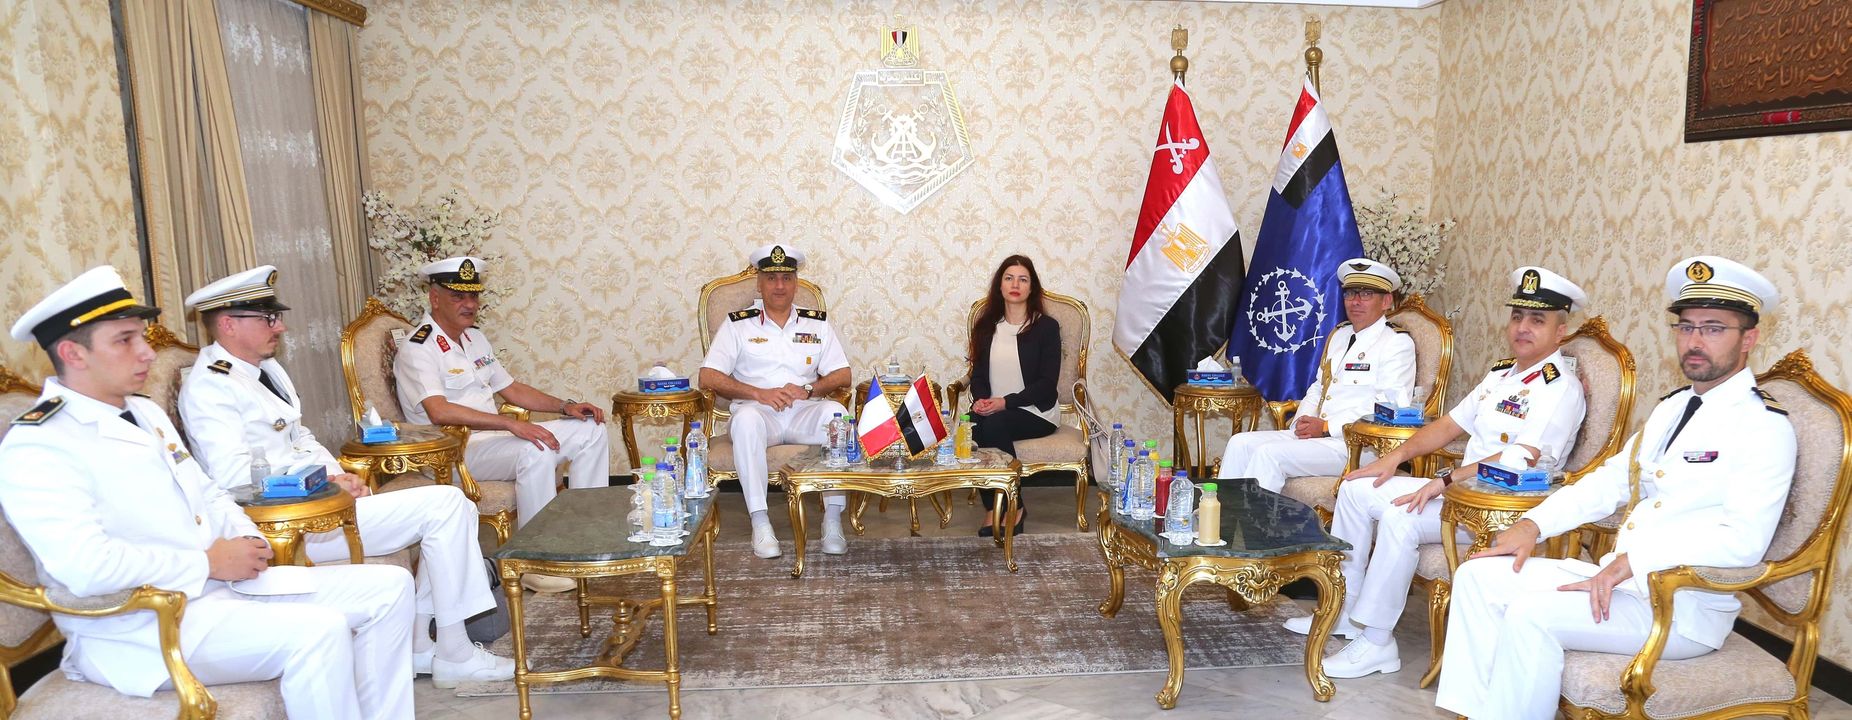 المتحدث العسكرى : الأكاديمية العسكرية المصرية بالتعاون مع الجانب الفرنسى تنظم فعاليات تسليم شهادات إنهاء 48519